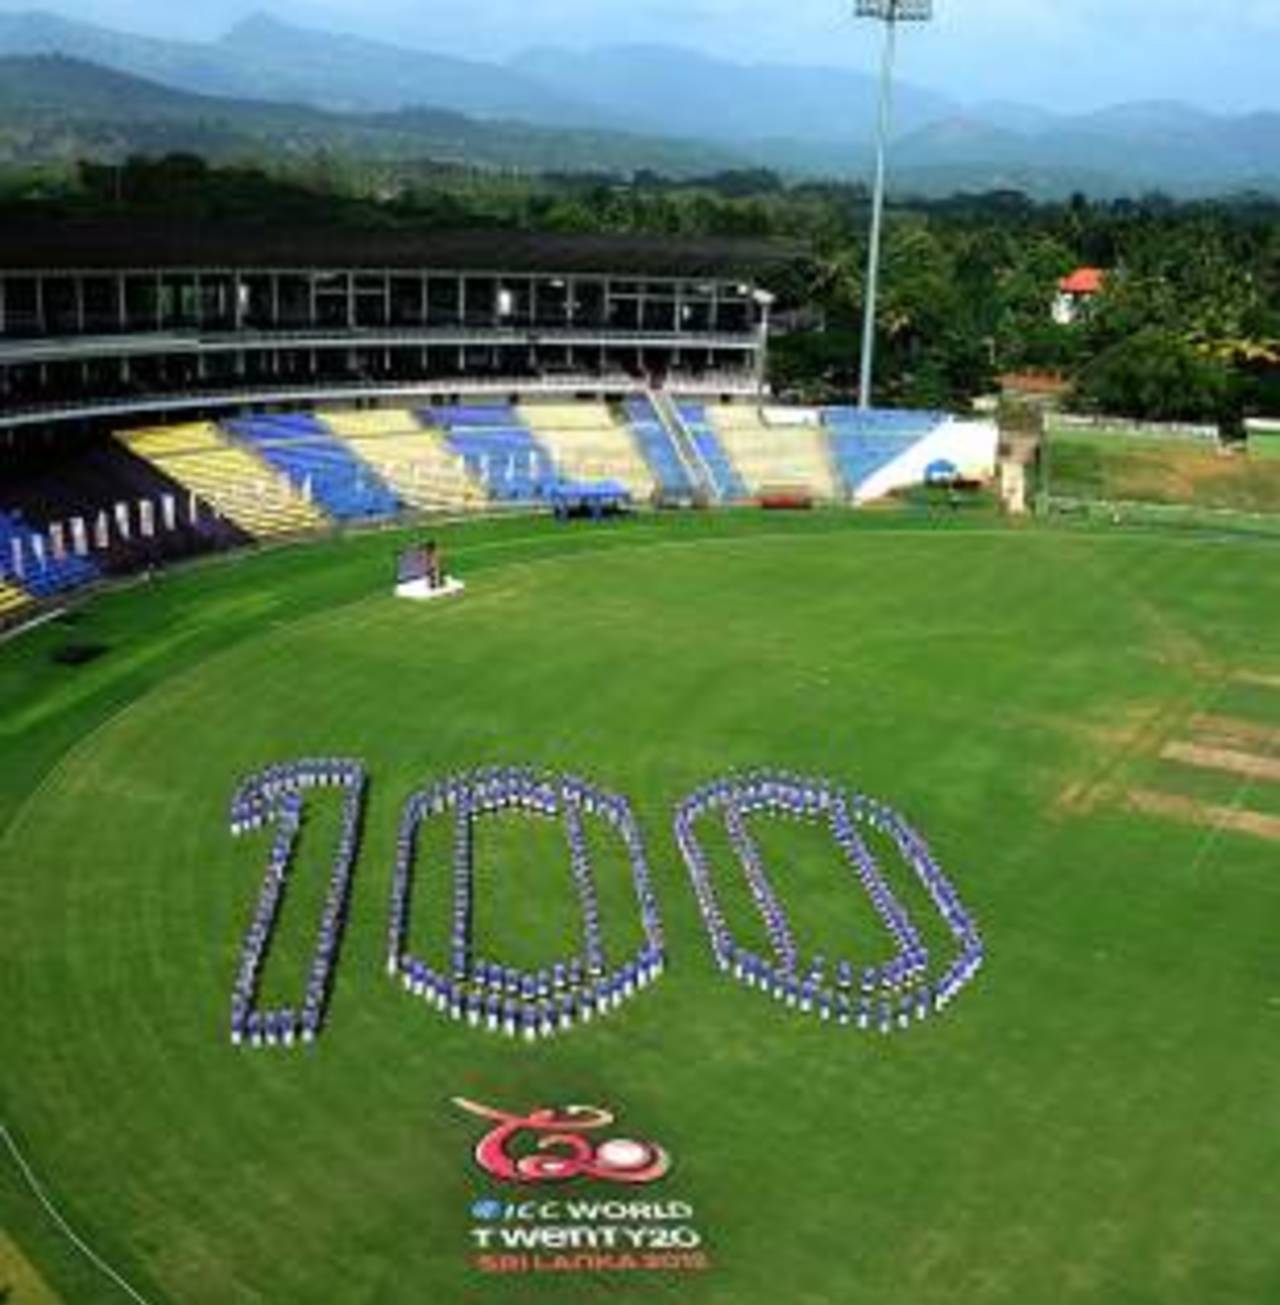 It's 100 days to go to the World Twenty20, Pallekele, June 10, 2012